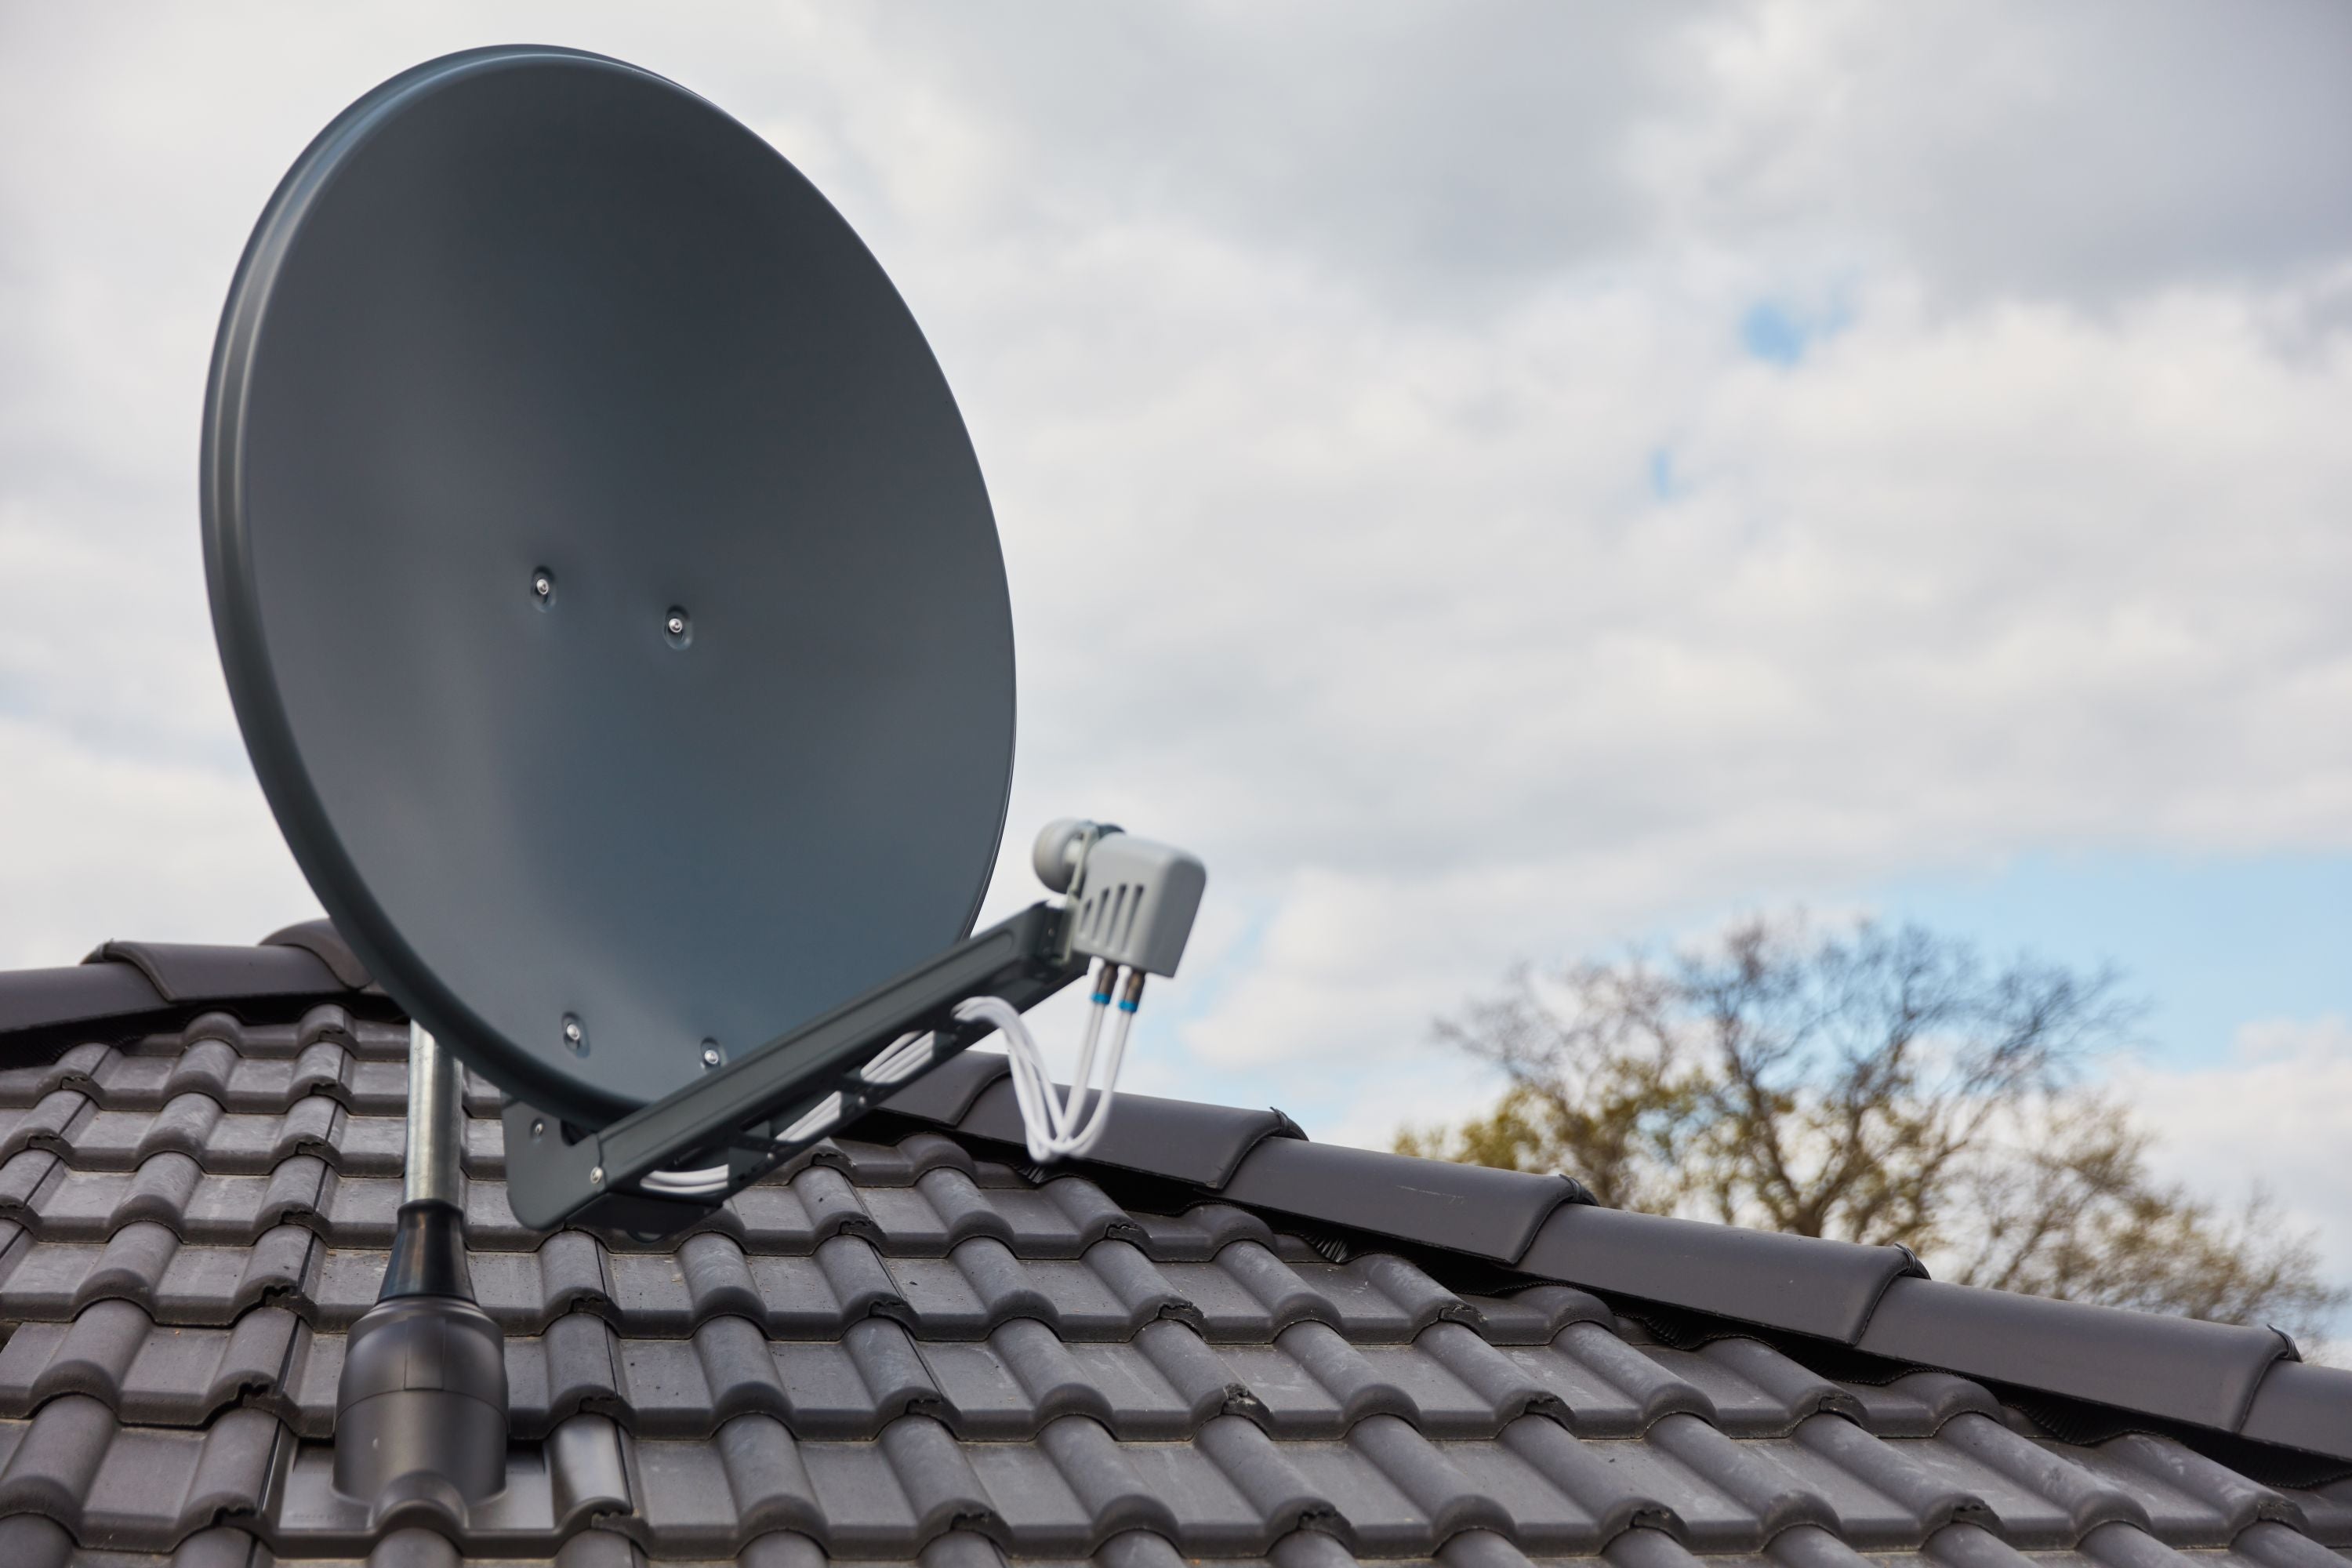 #Astra-Satellit: So viele neue TV-Sender wie seit 20 Jahren nicht